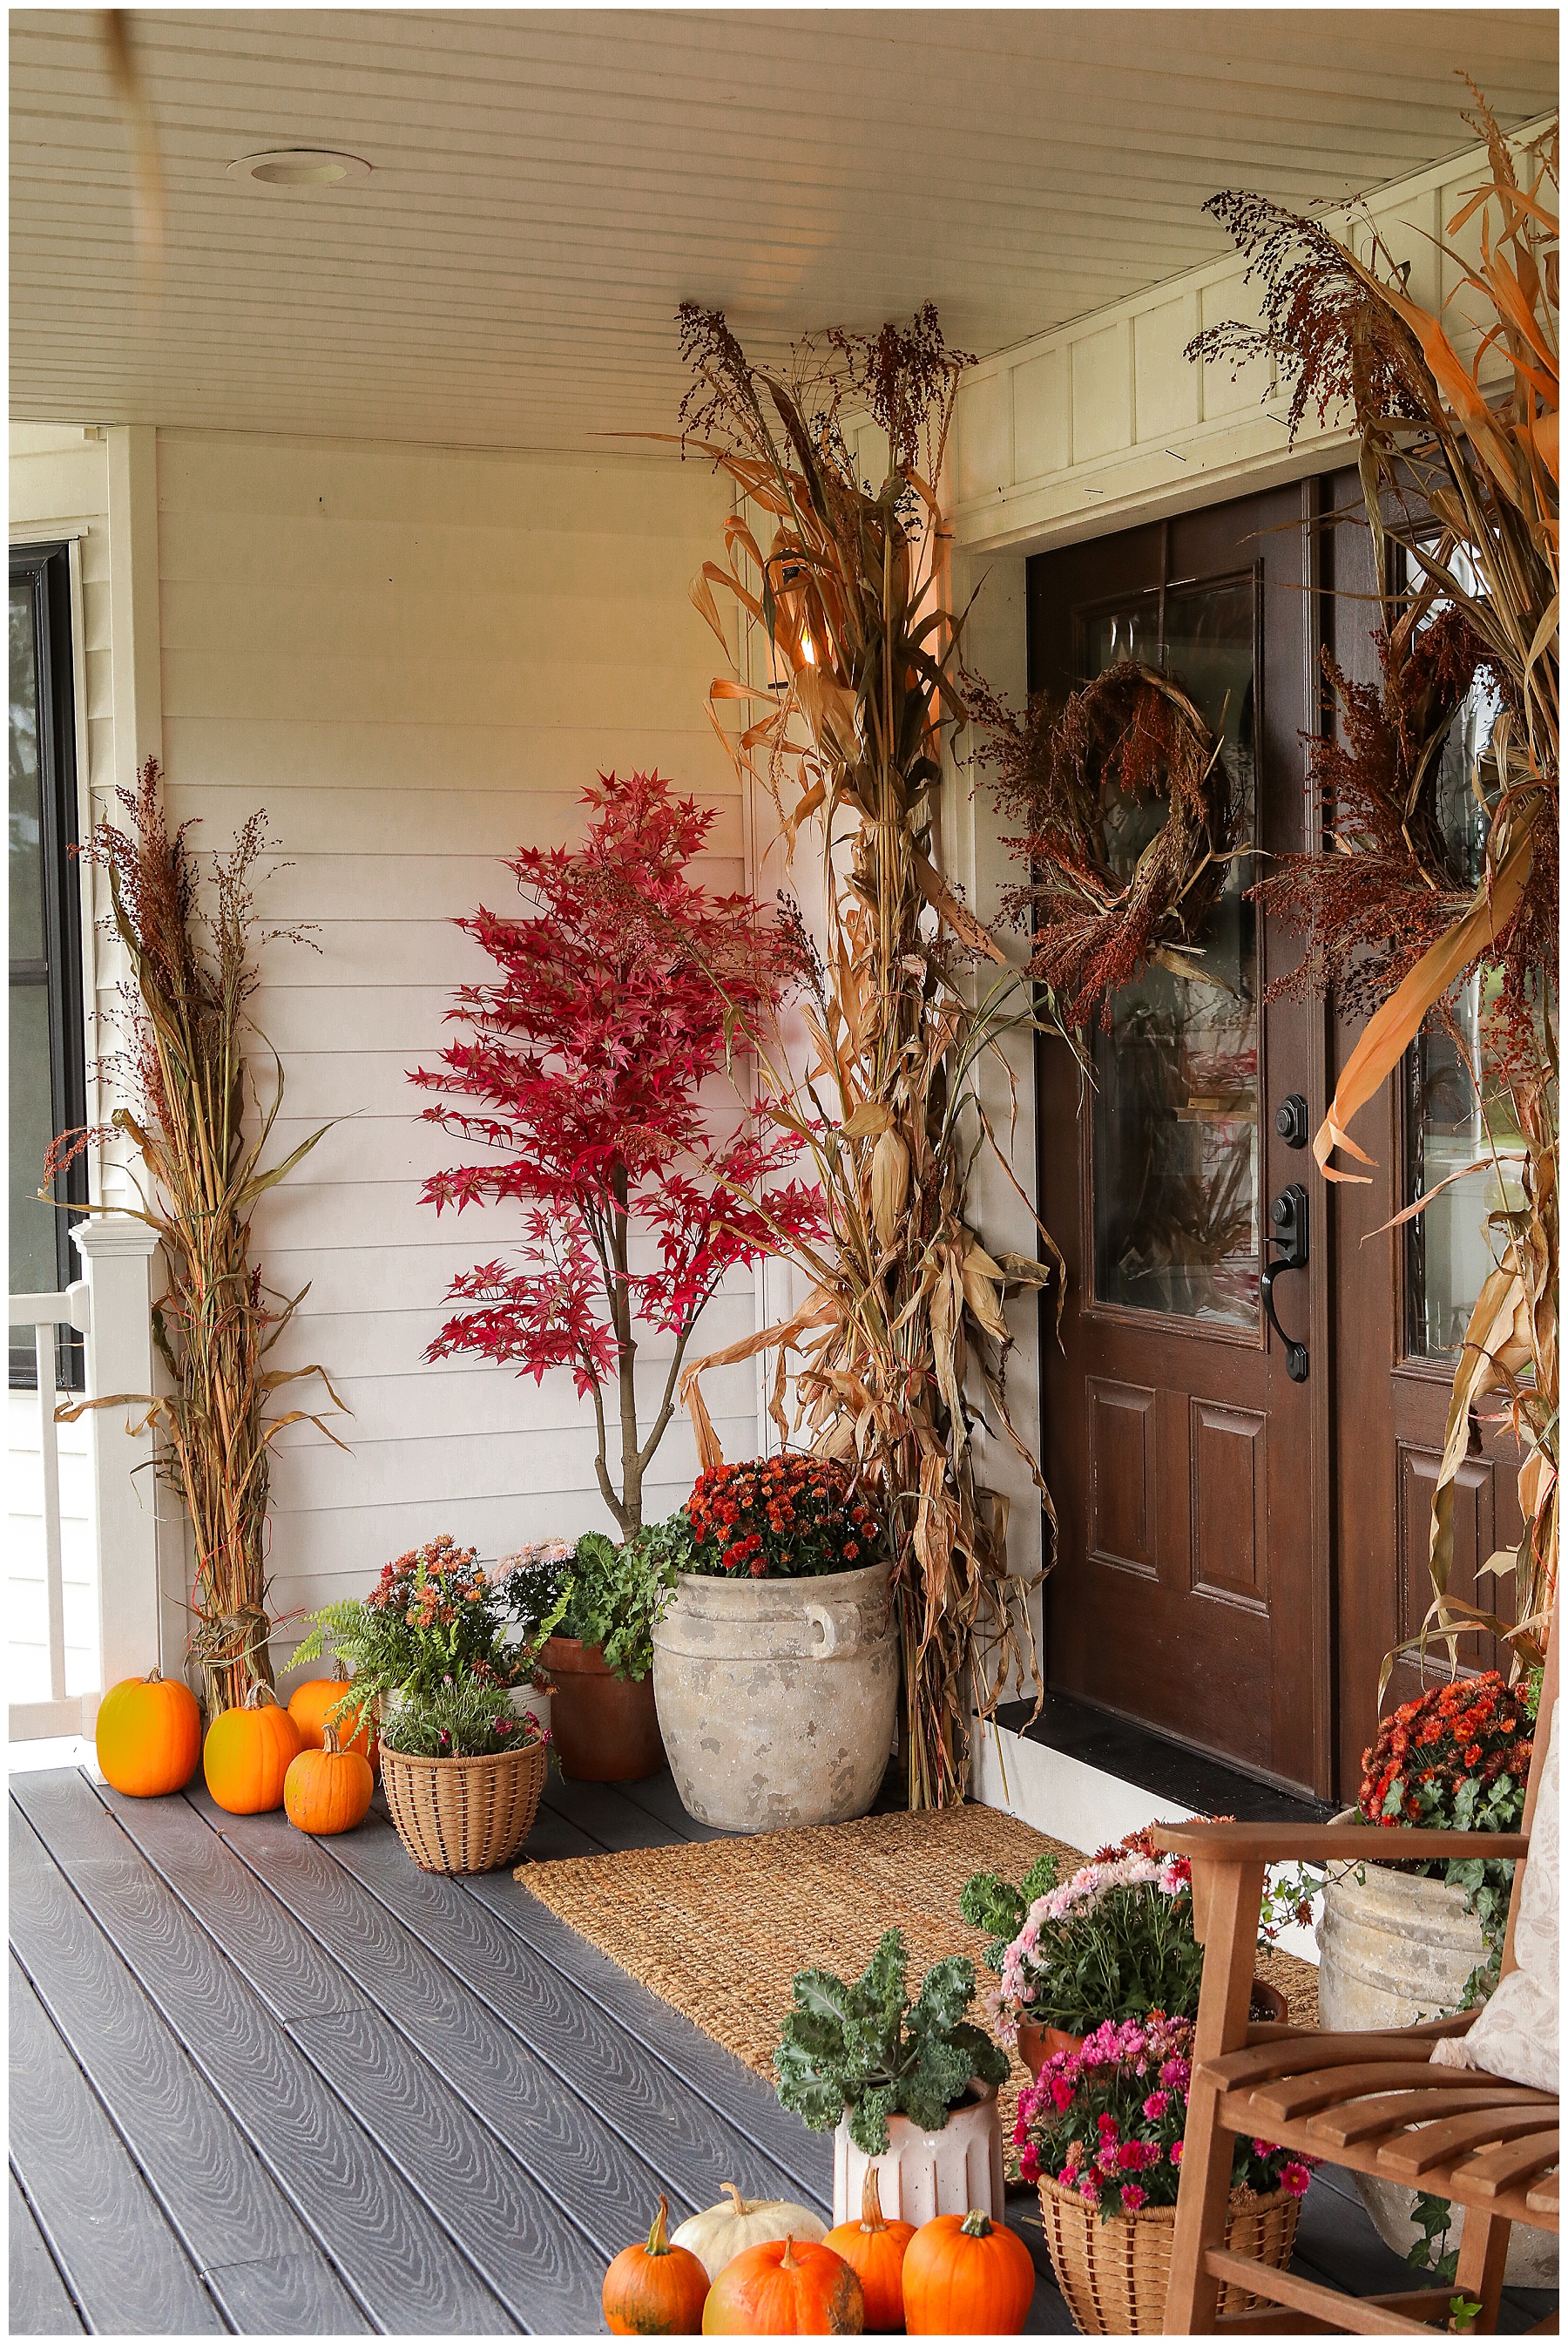 Fall front door